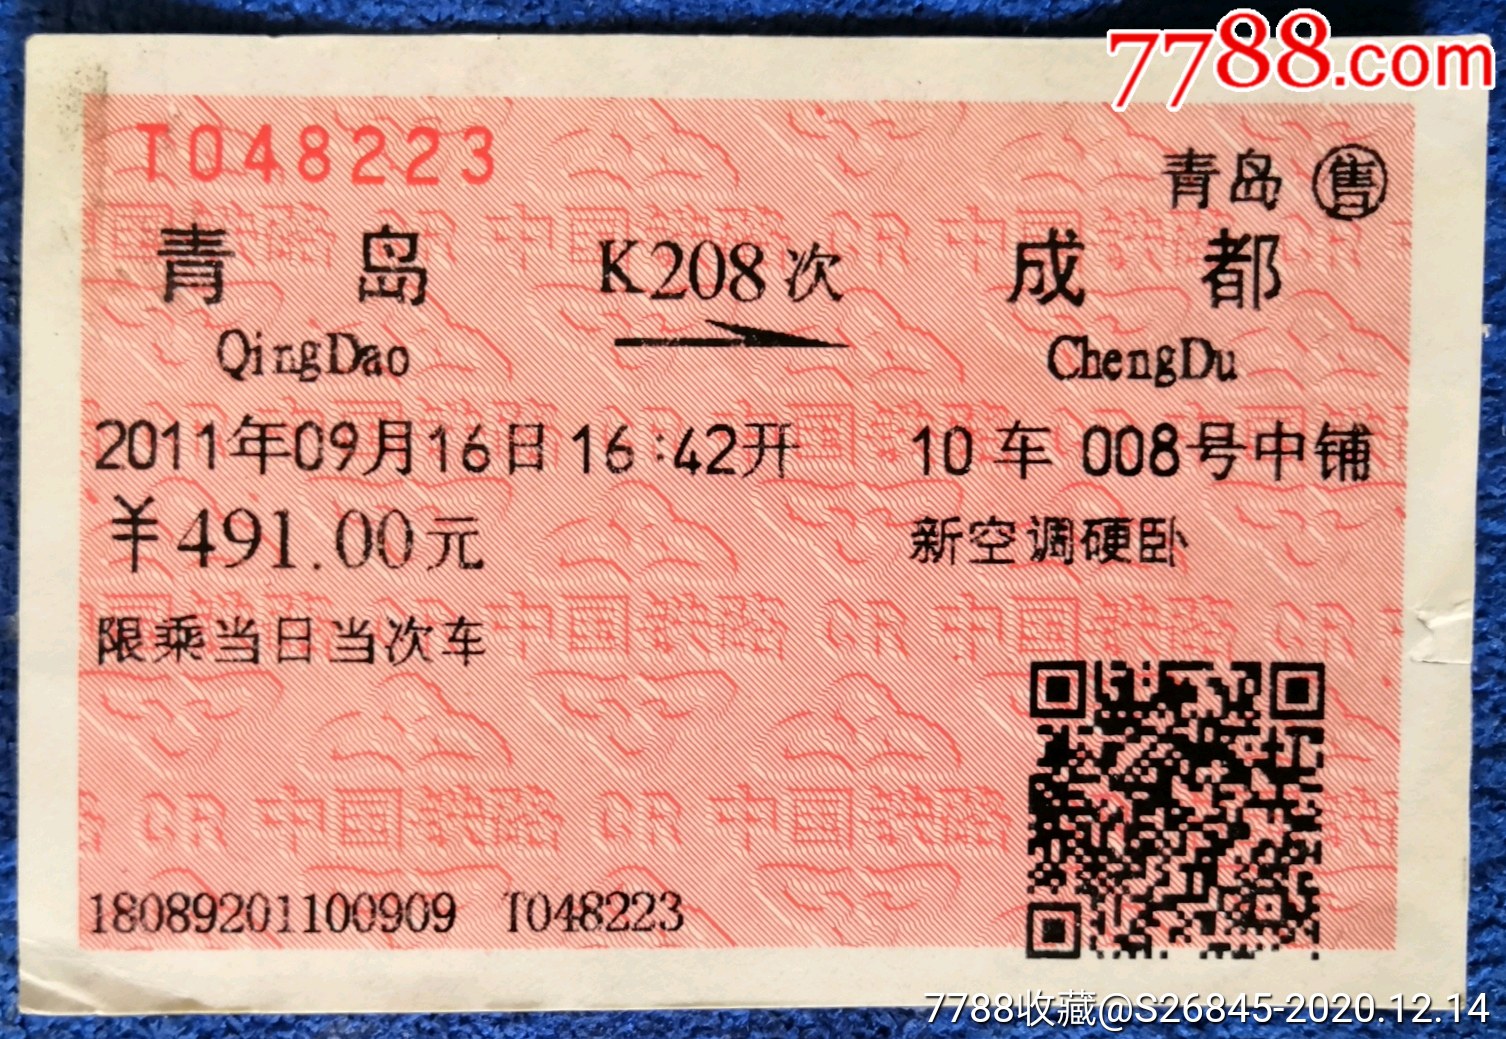 青岛成都k208次新空调硬卧火车票